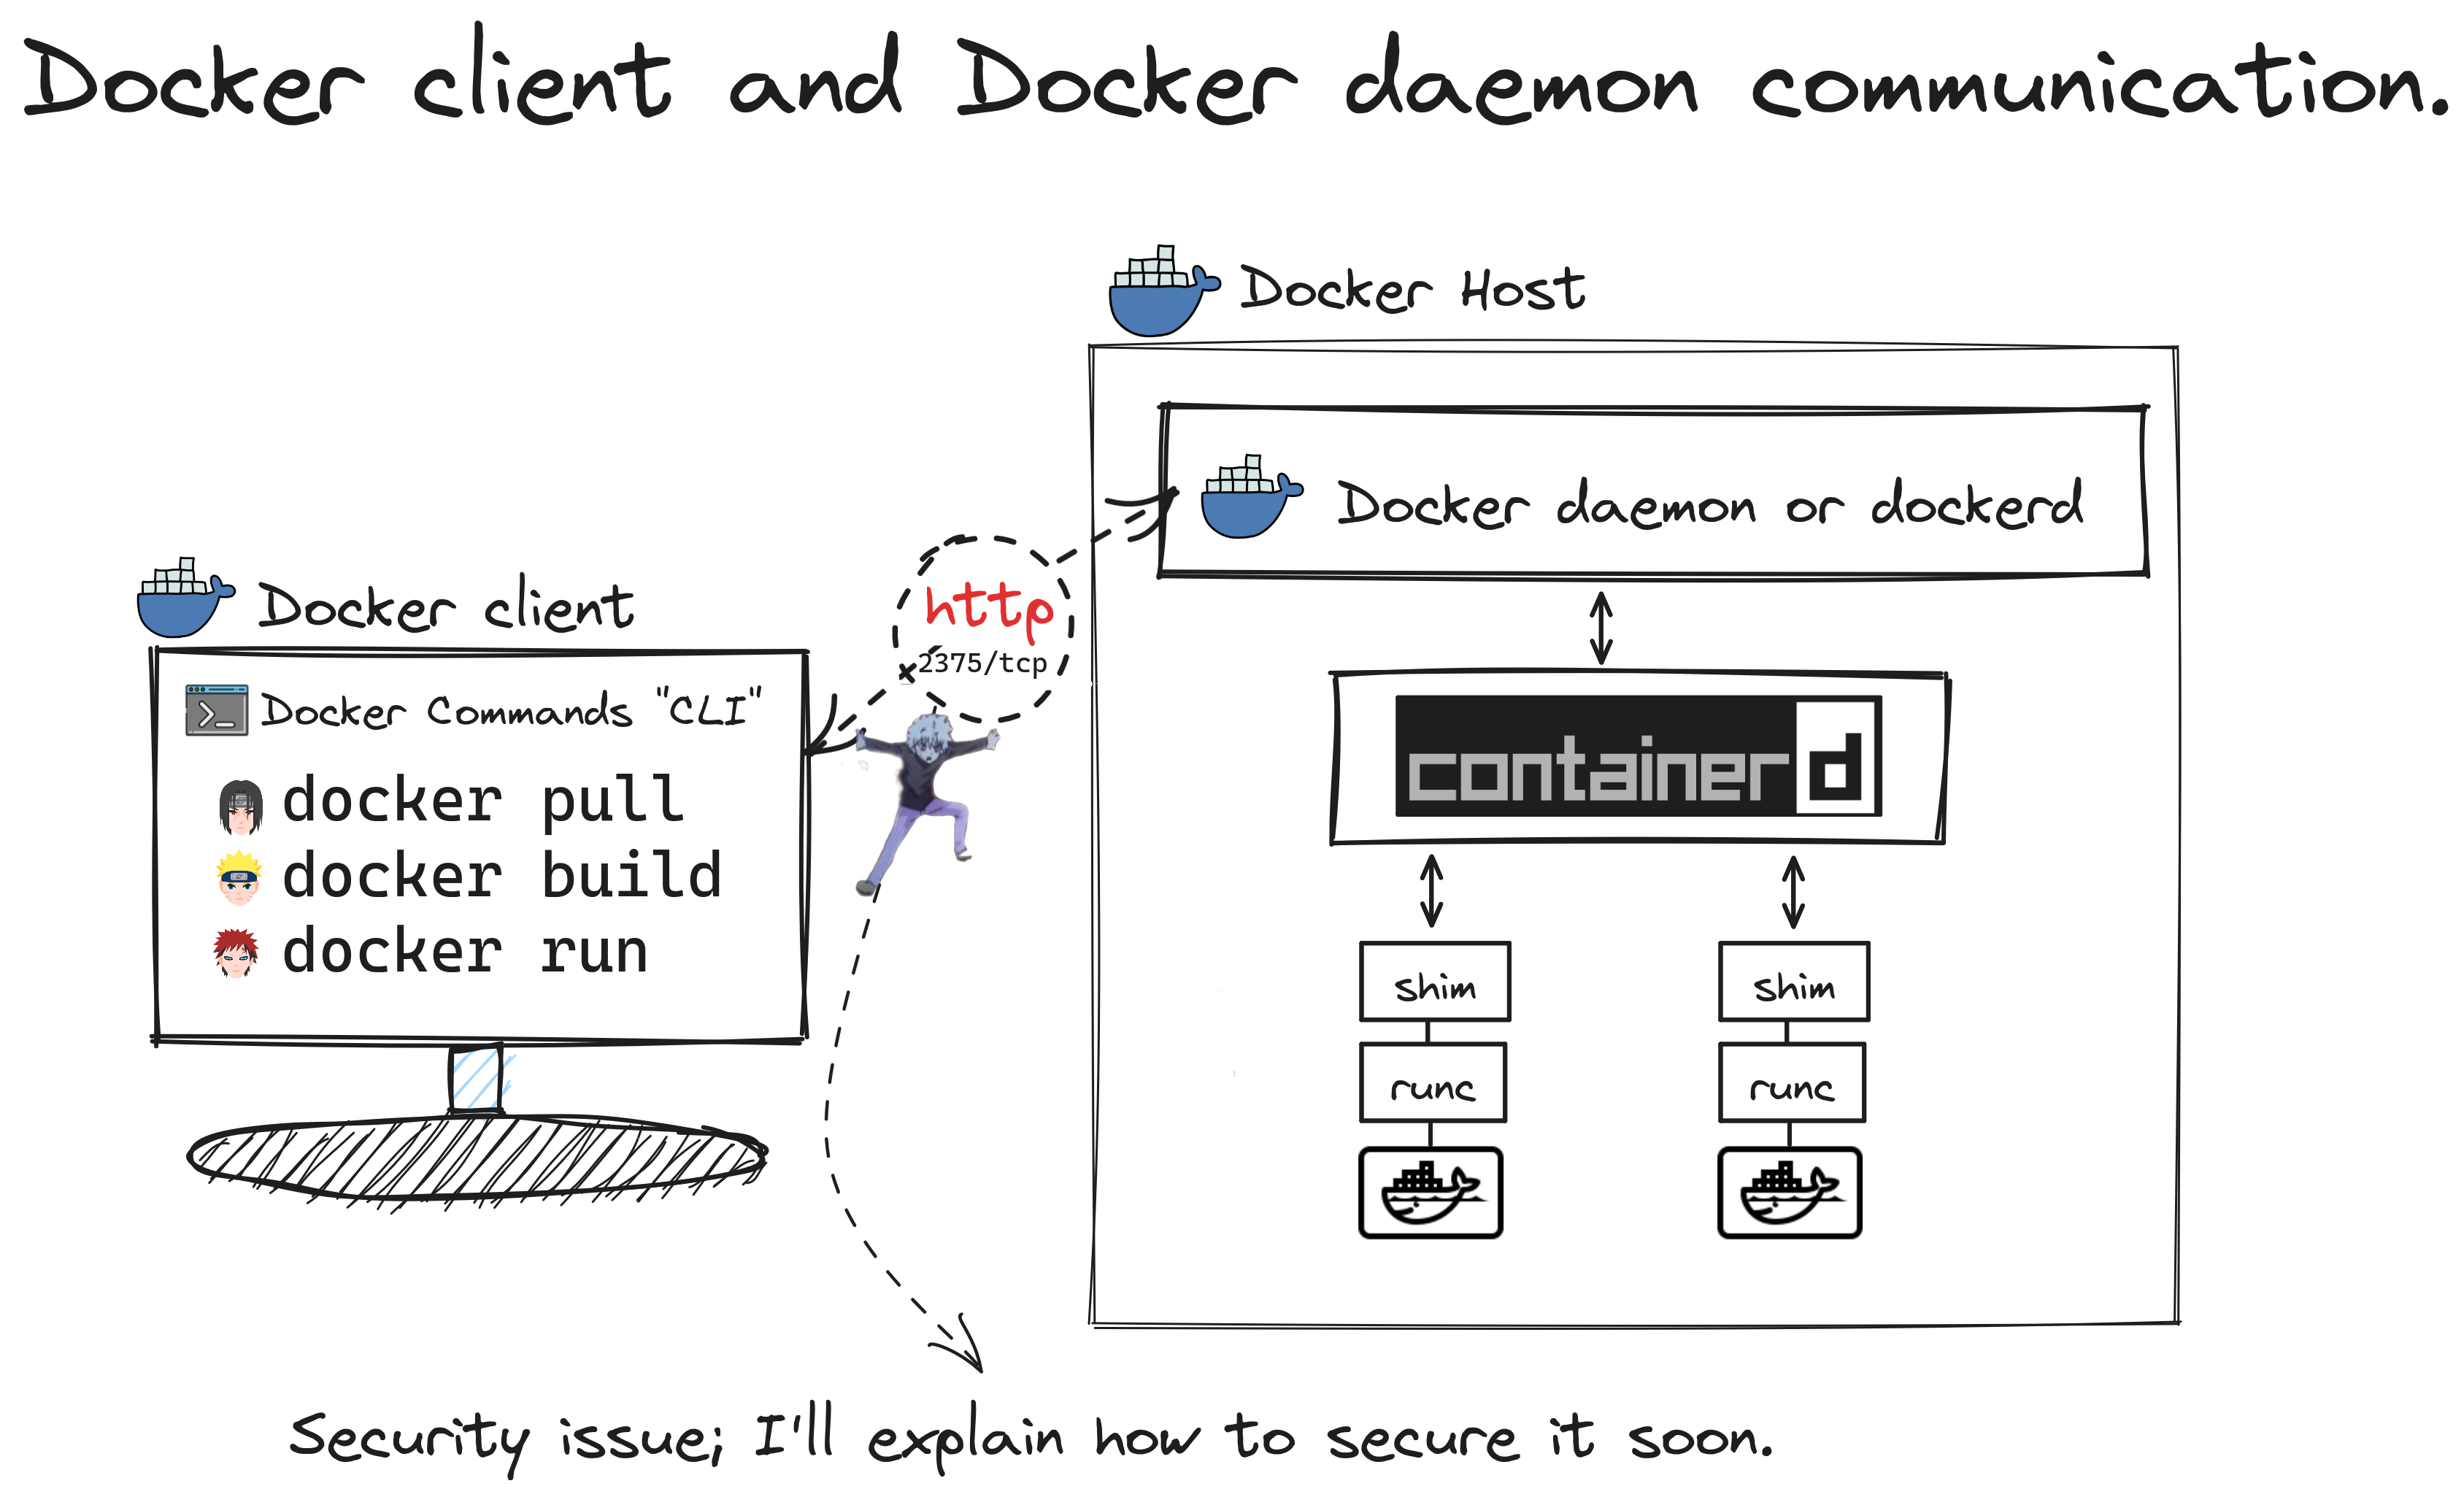 Docker client and Docker daemon communication